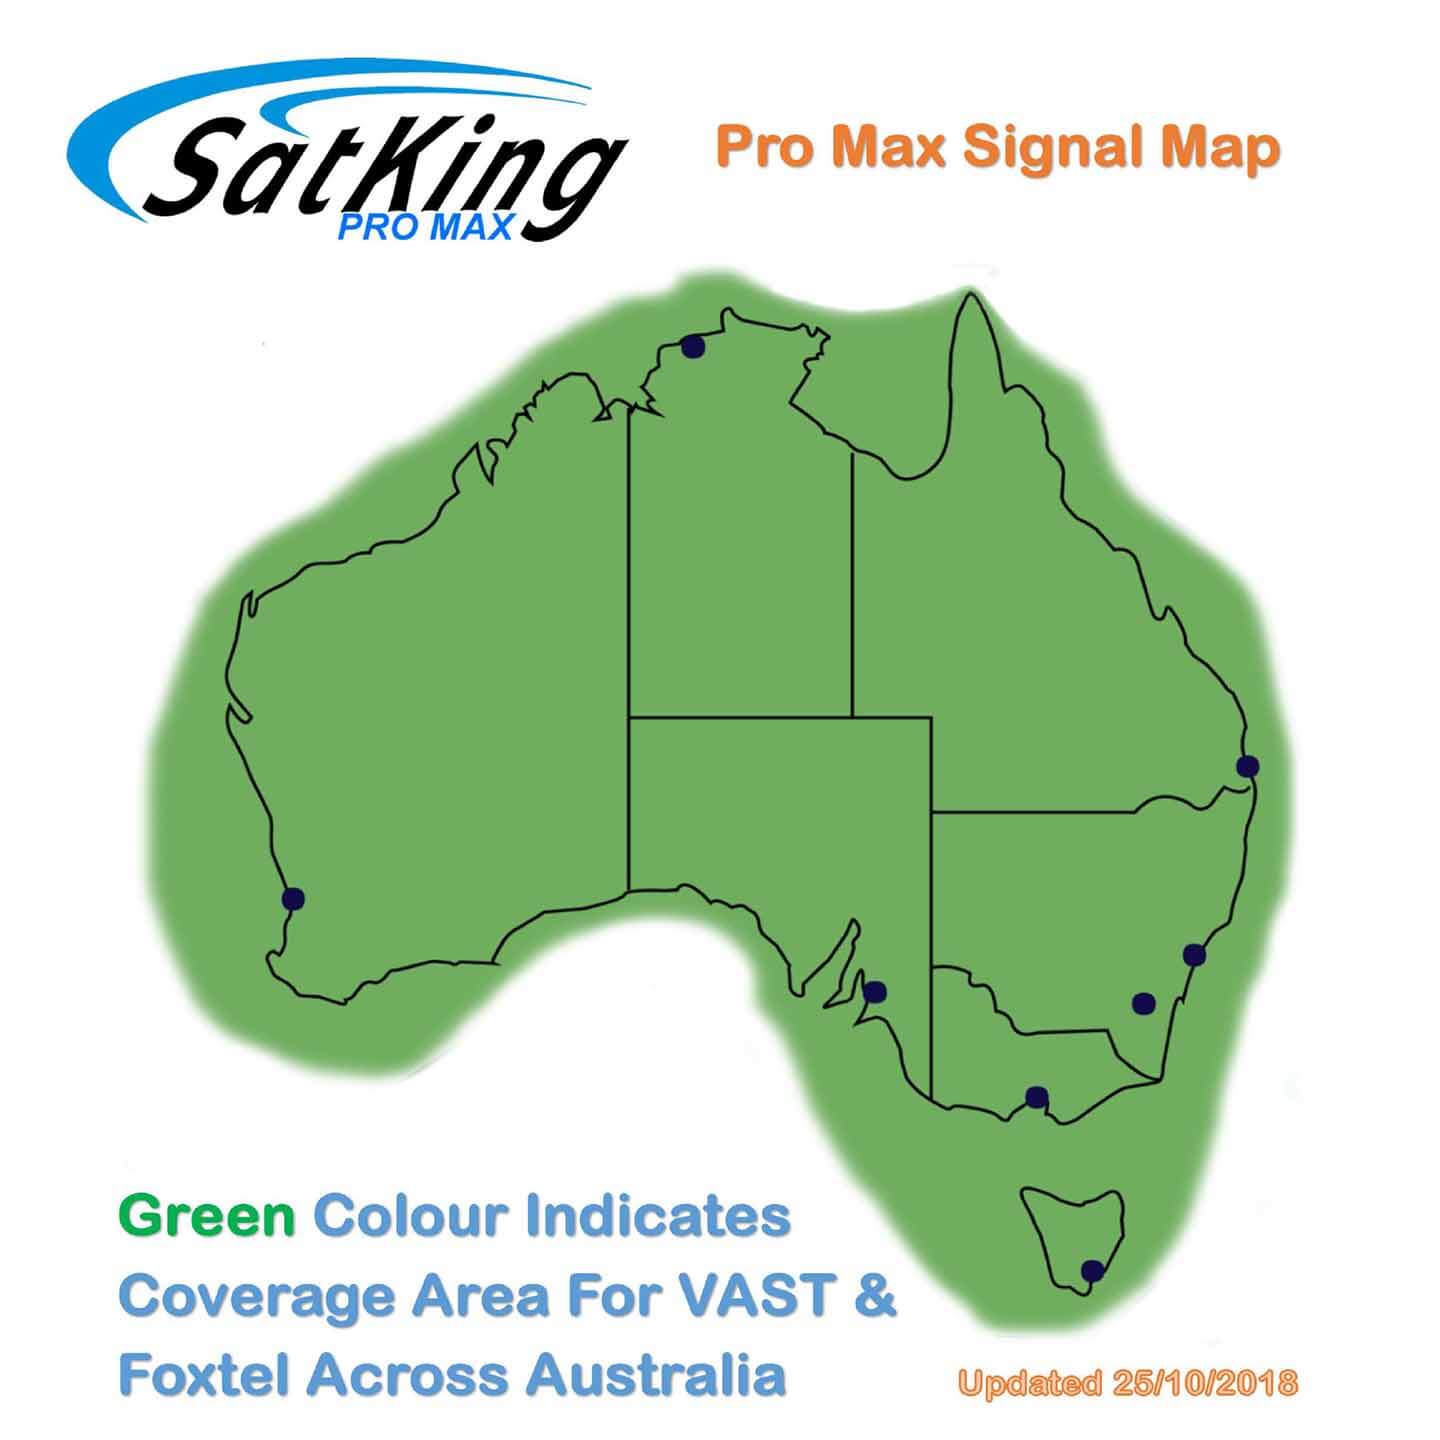 promax signal coverage map